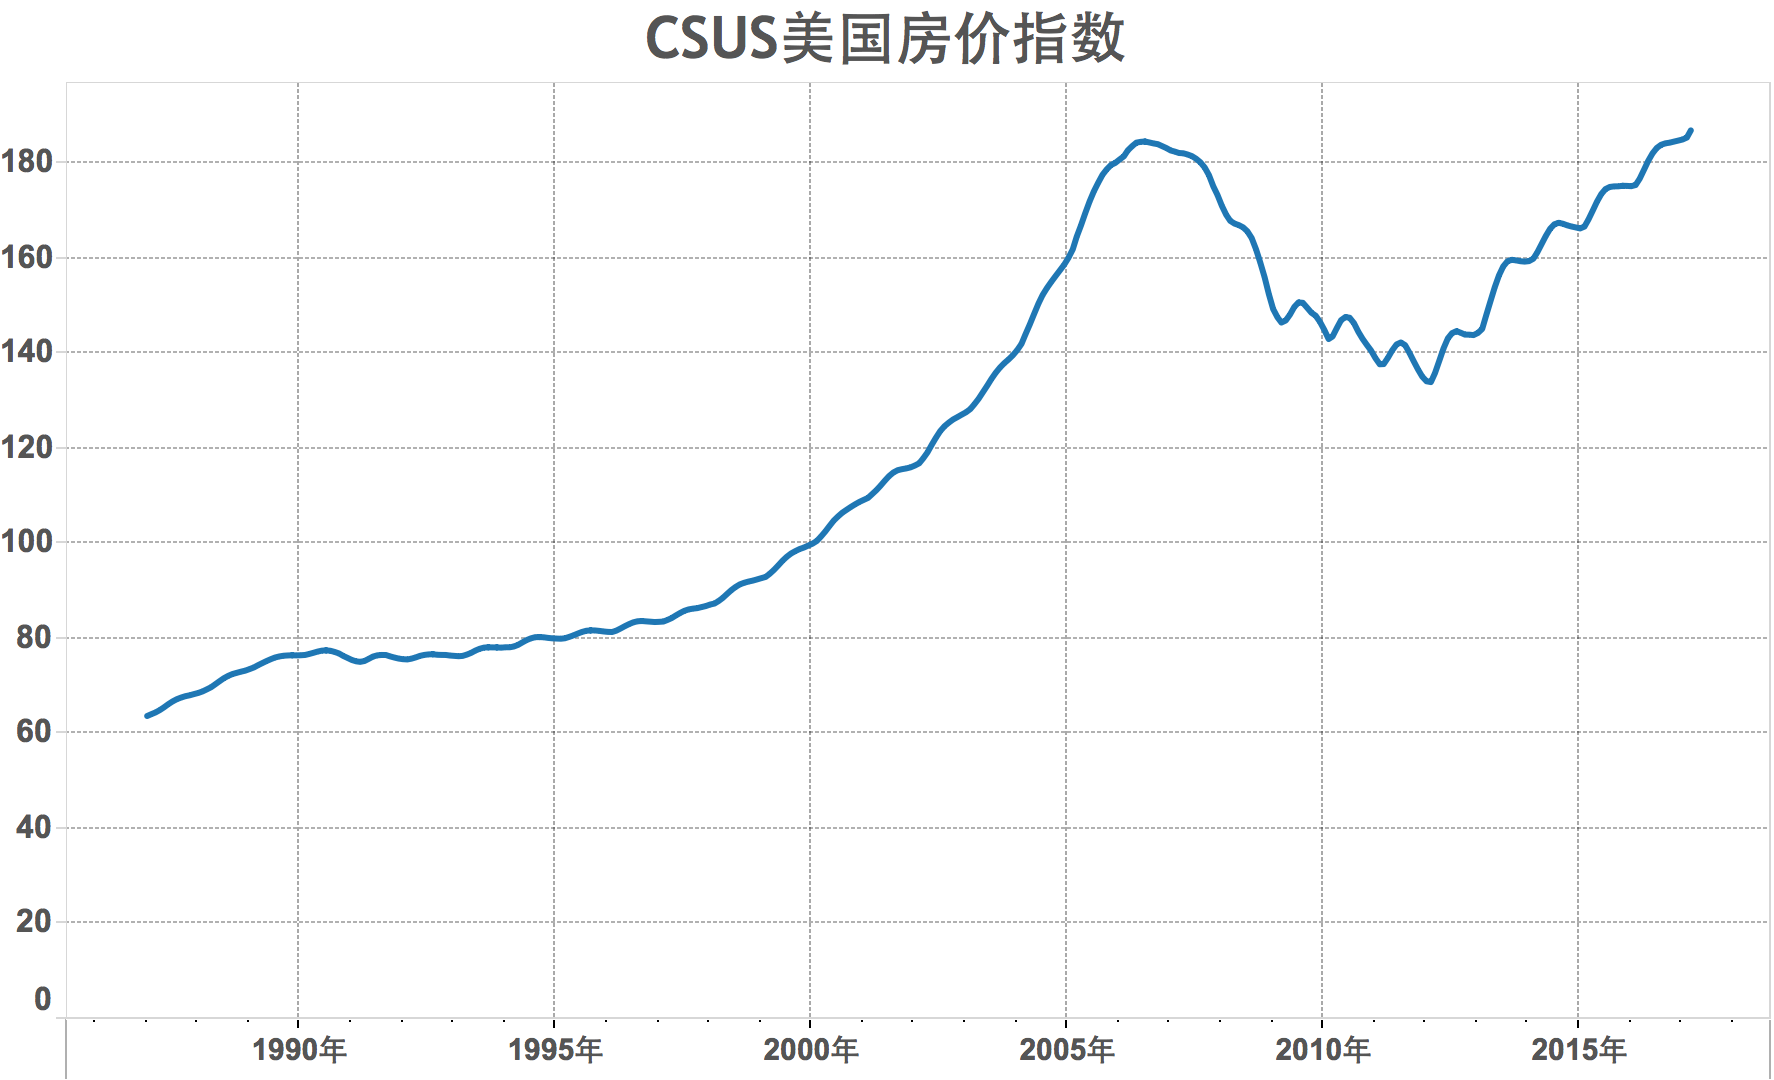 CSUS 美国房价指数